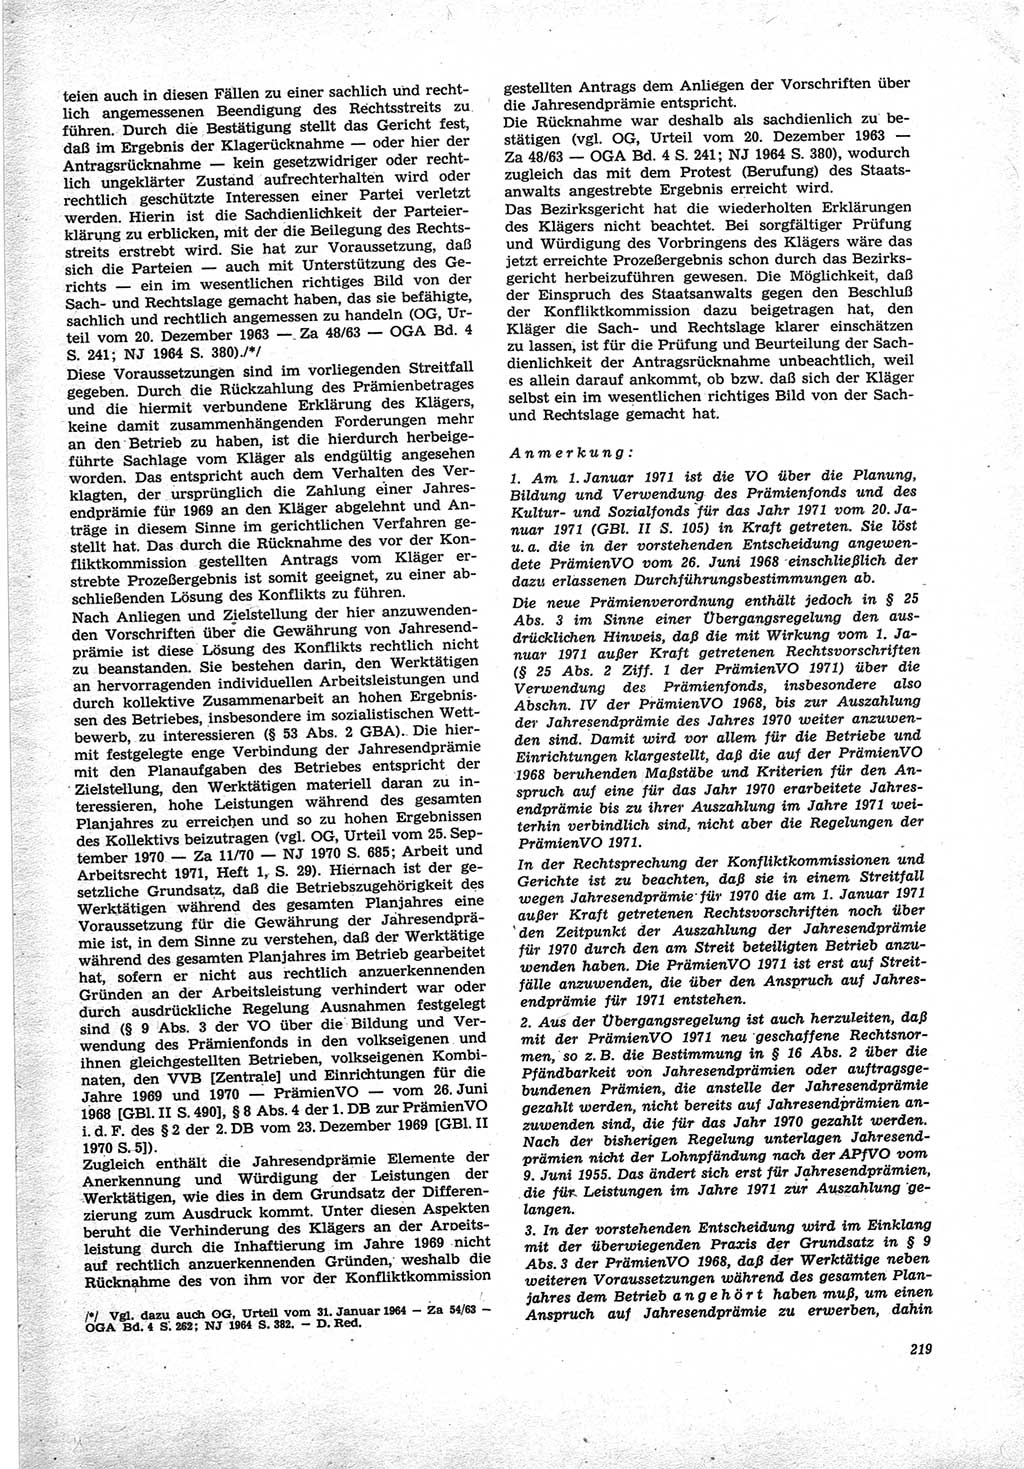 Neue Justiz (NJ), Zeitschrift für Recht und Rechtswissenschaft [Deutsche Demokratische Republik (DDR)], 25. Jahrgang 1971, Seite 219 (NJ DDR 1971, S. 219)